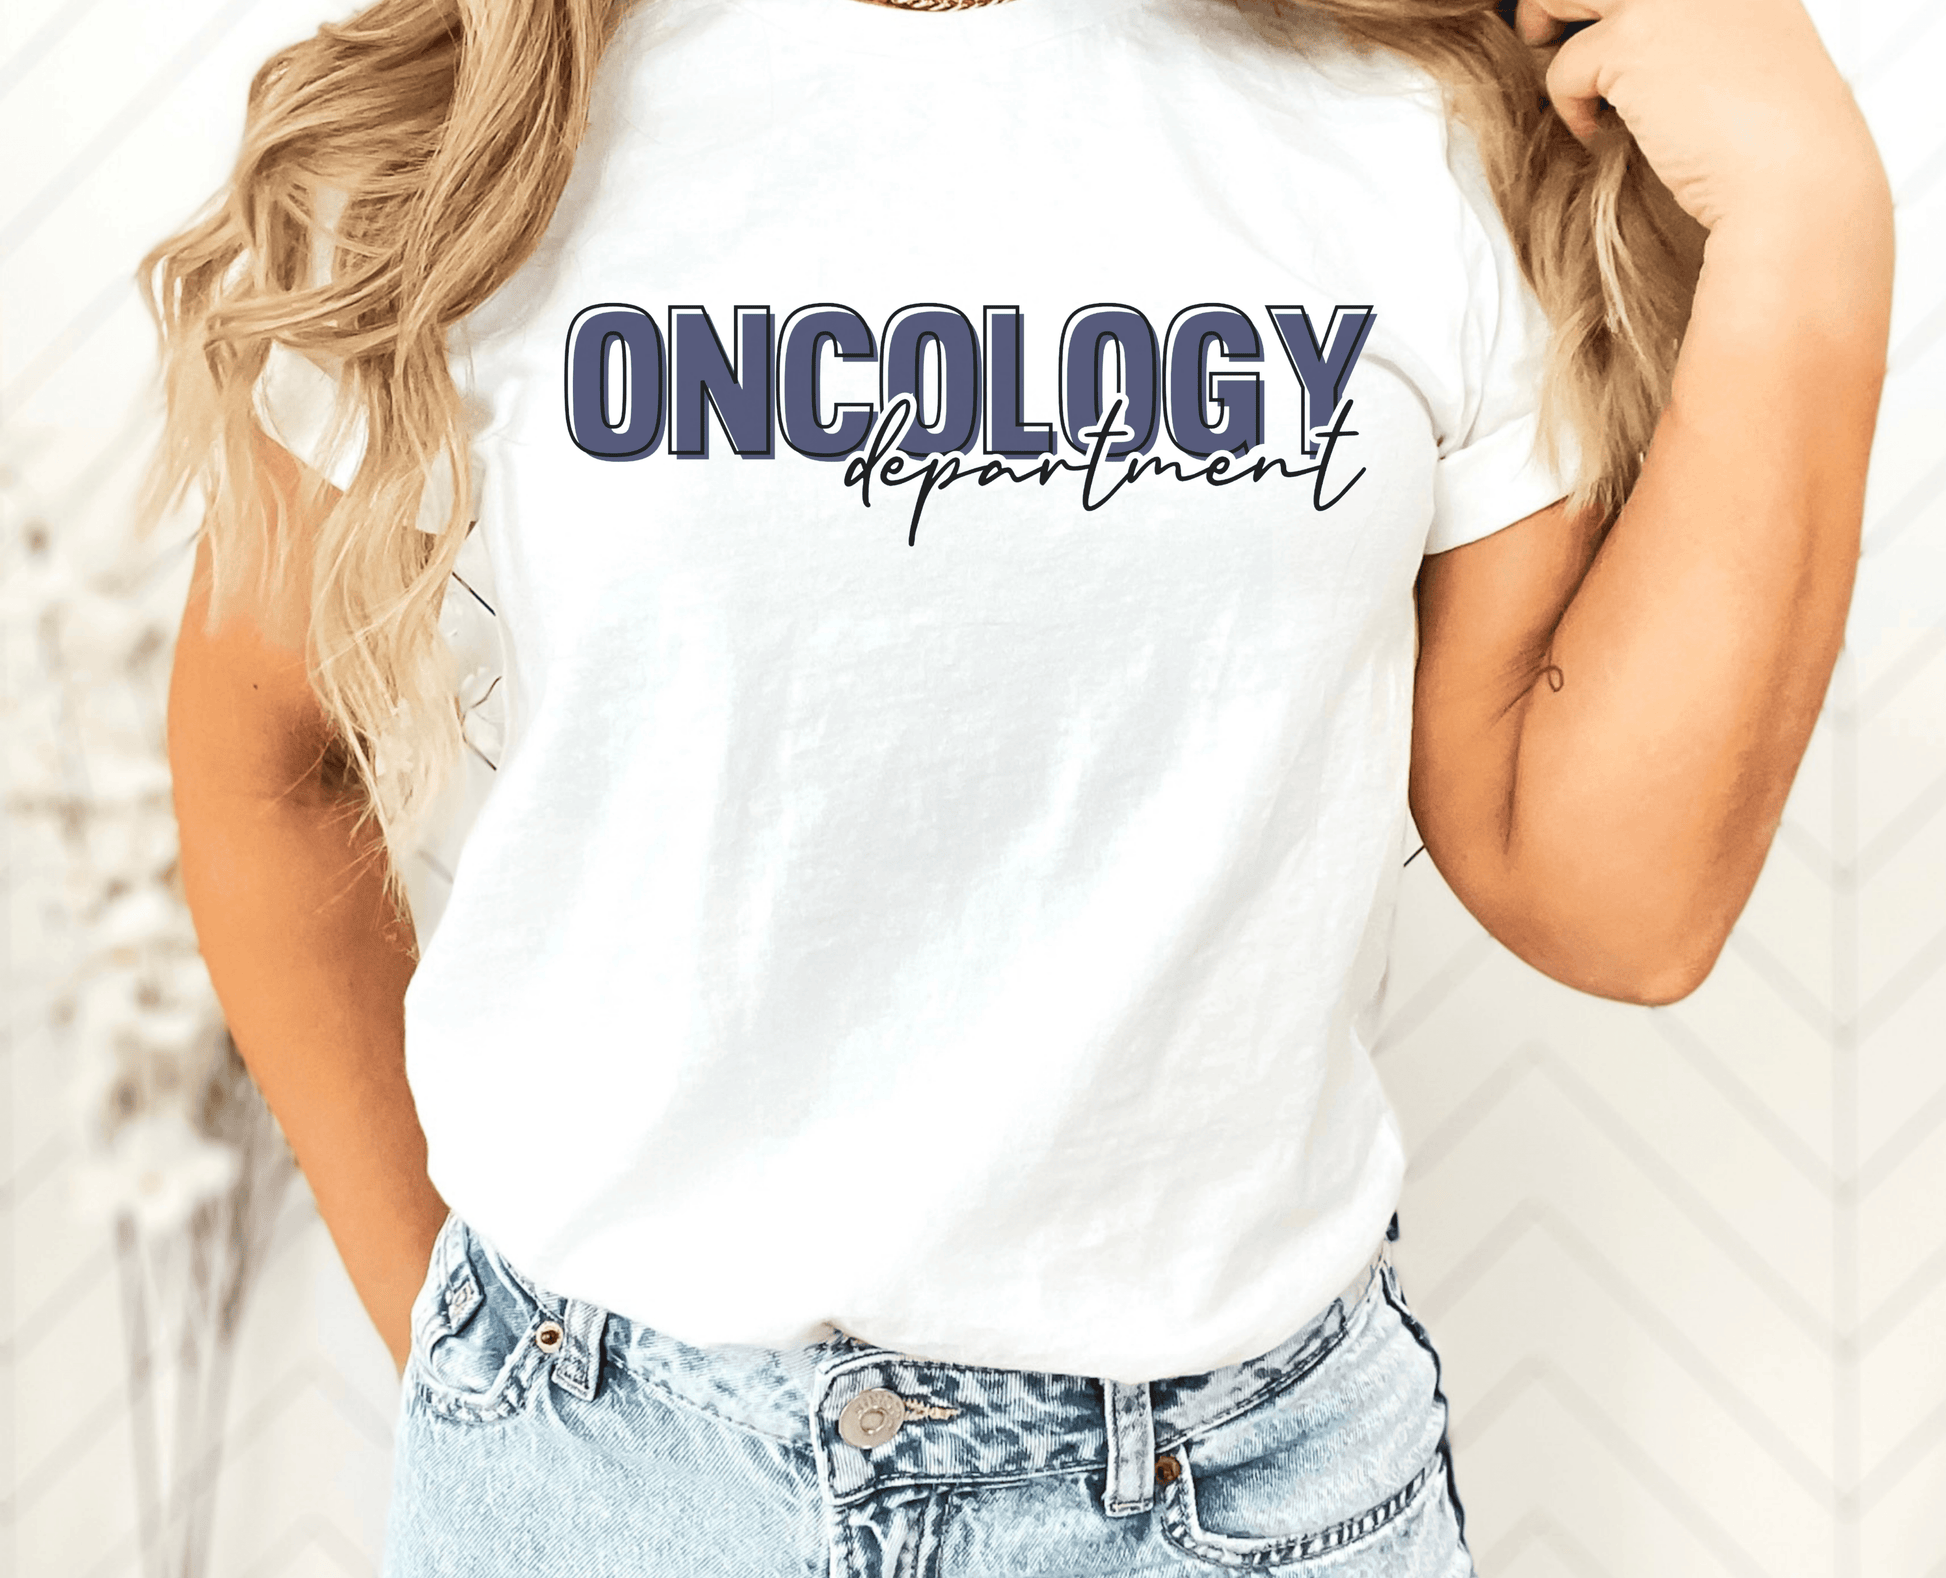 Oncology Department Shirt - BentleyBlueCo